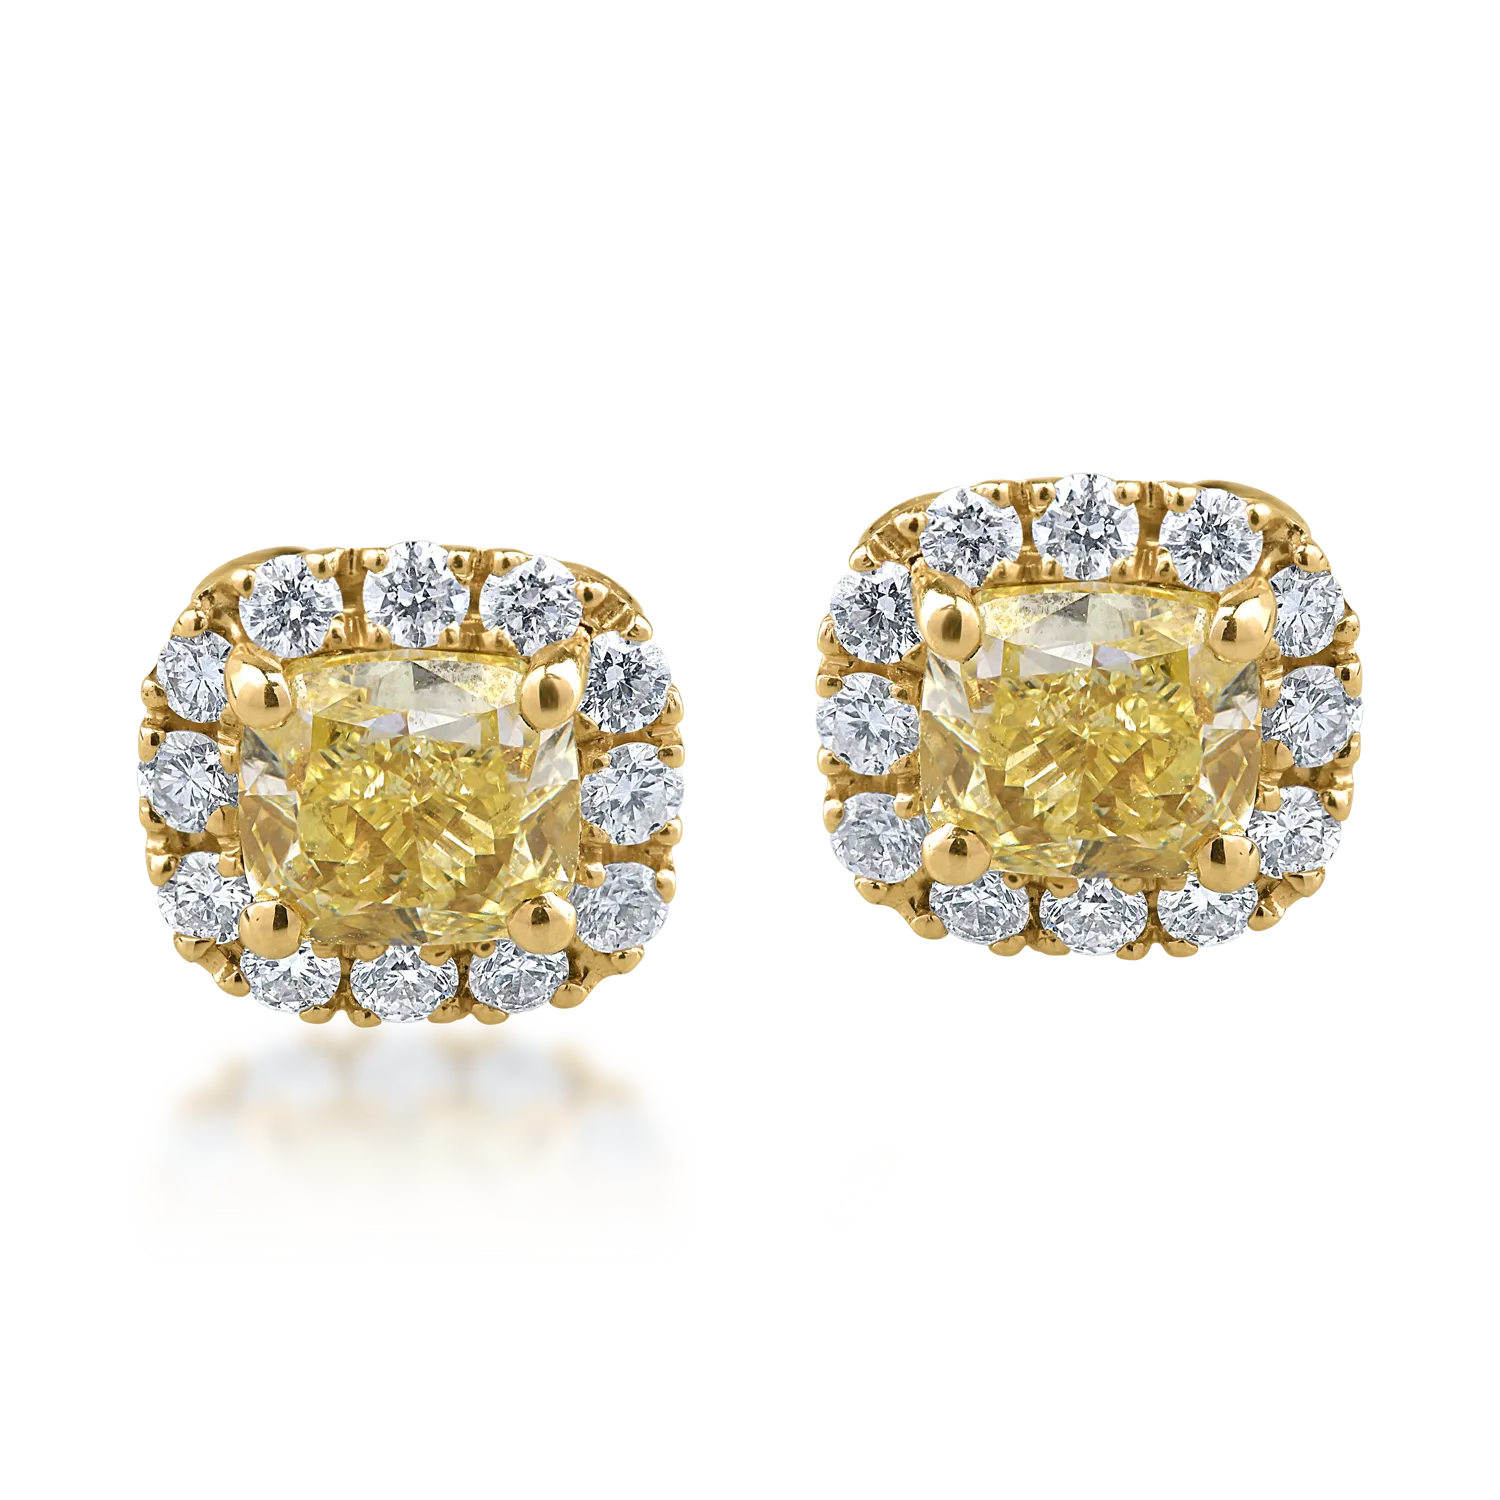 Cercei din aur galben cu diamante fancy galbene de 1.22ct si diamante transparente de 0.38ct